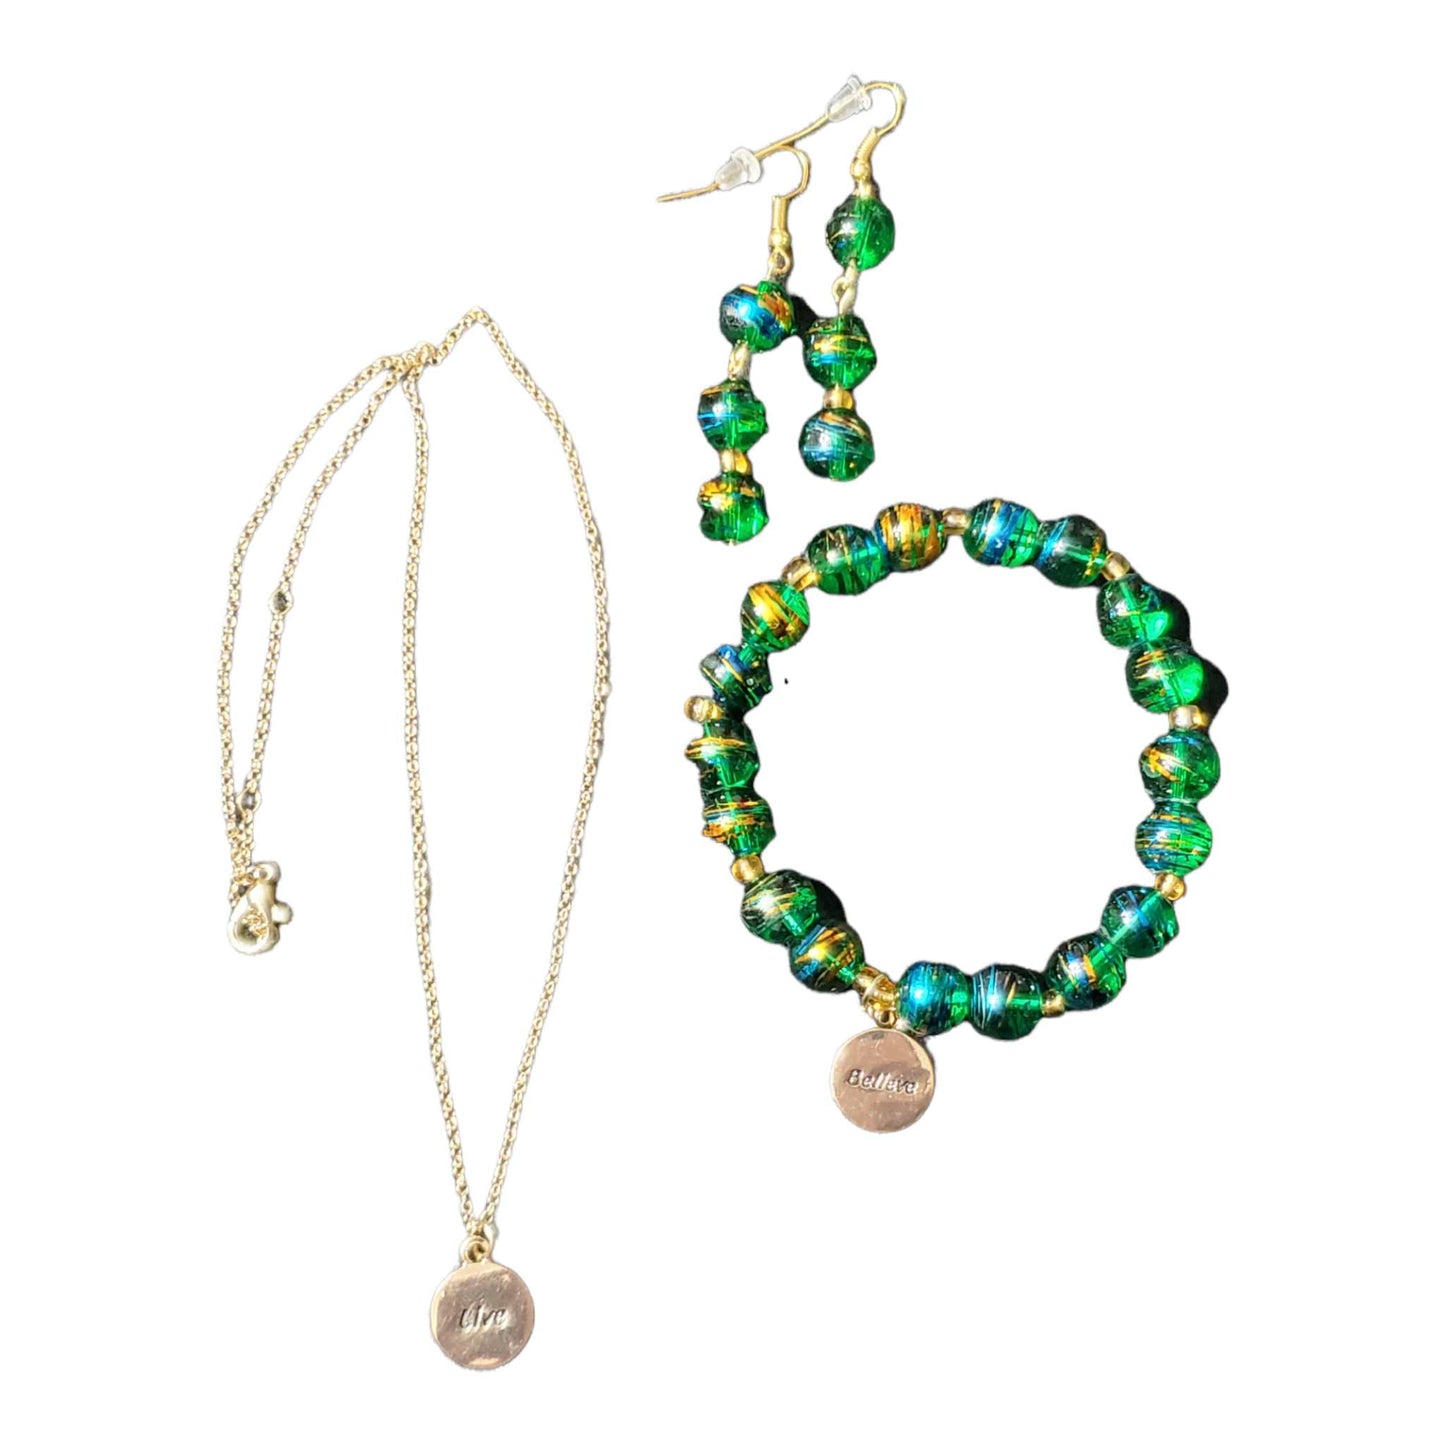 Believe 3 Piece Jewelry Set; Necklace, Bracelet, & Earrings